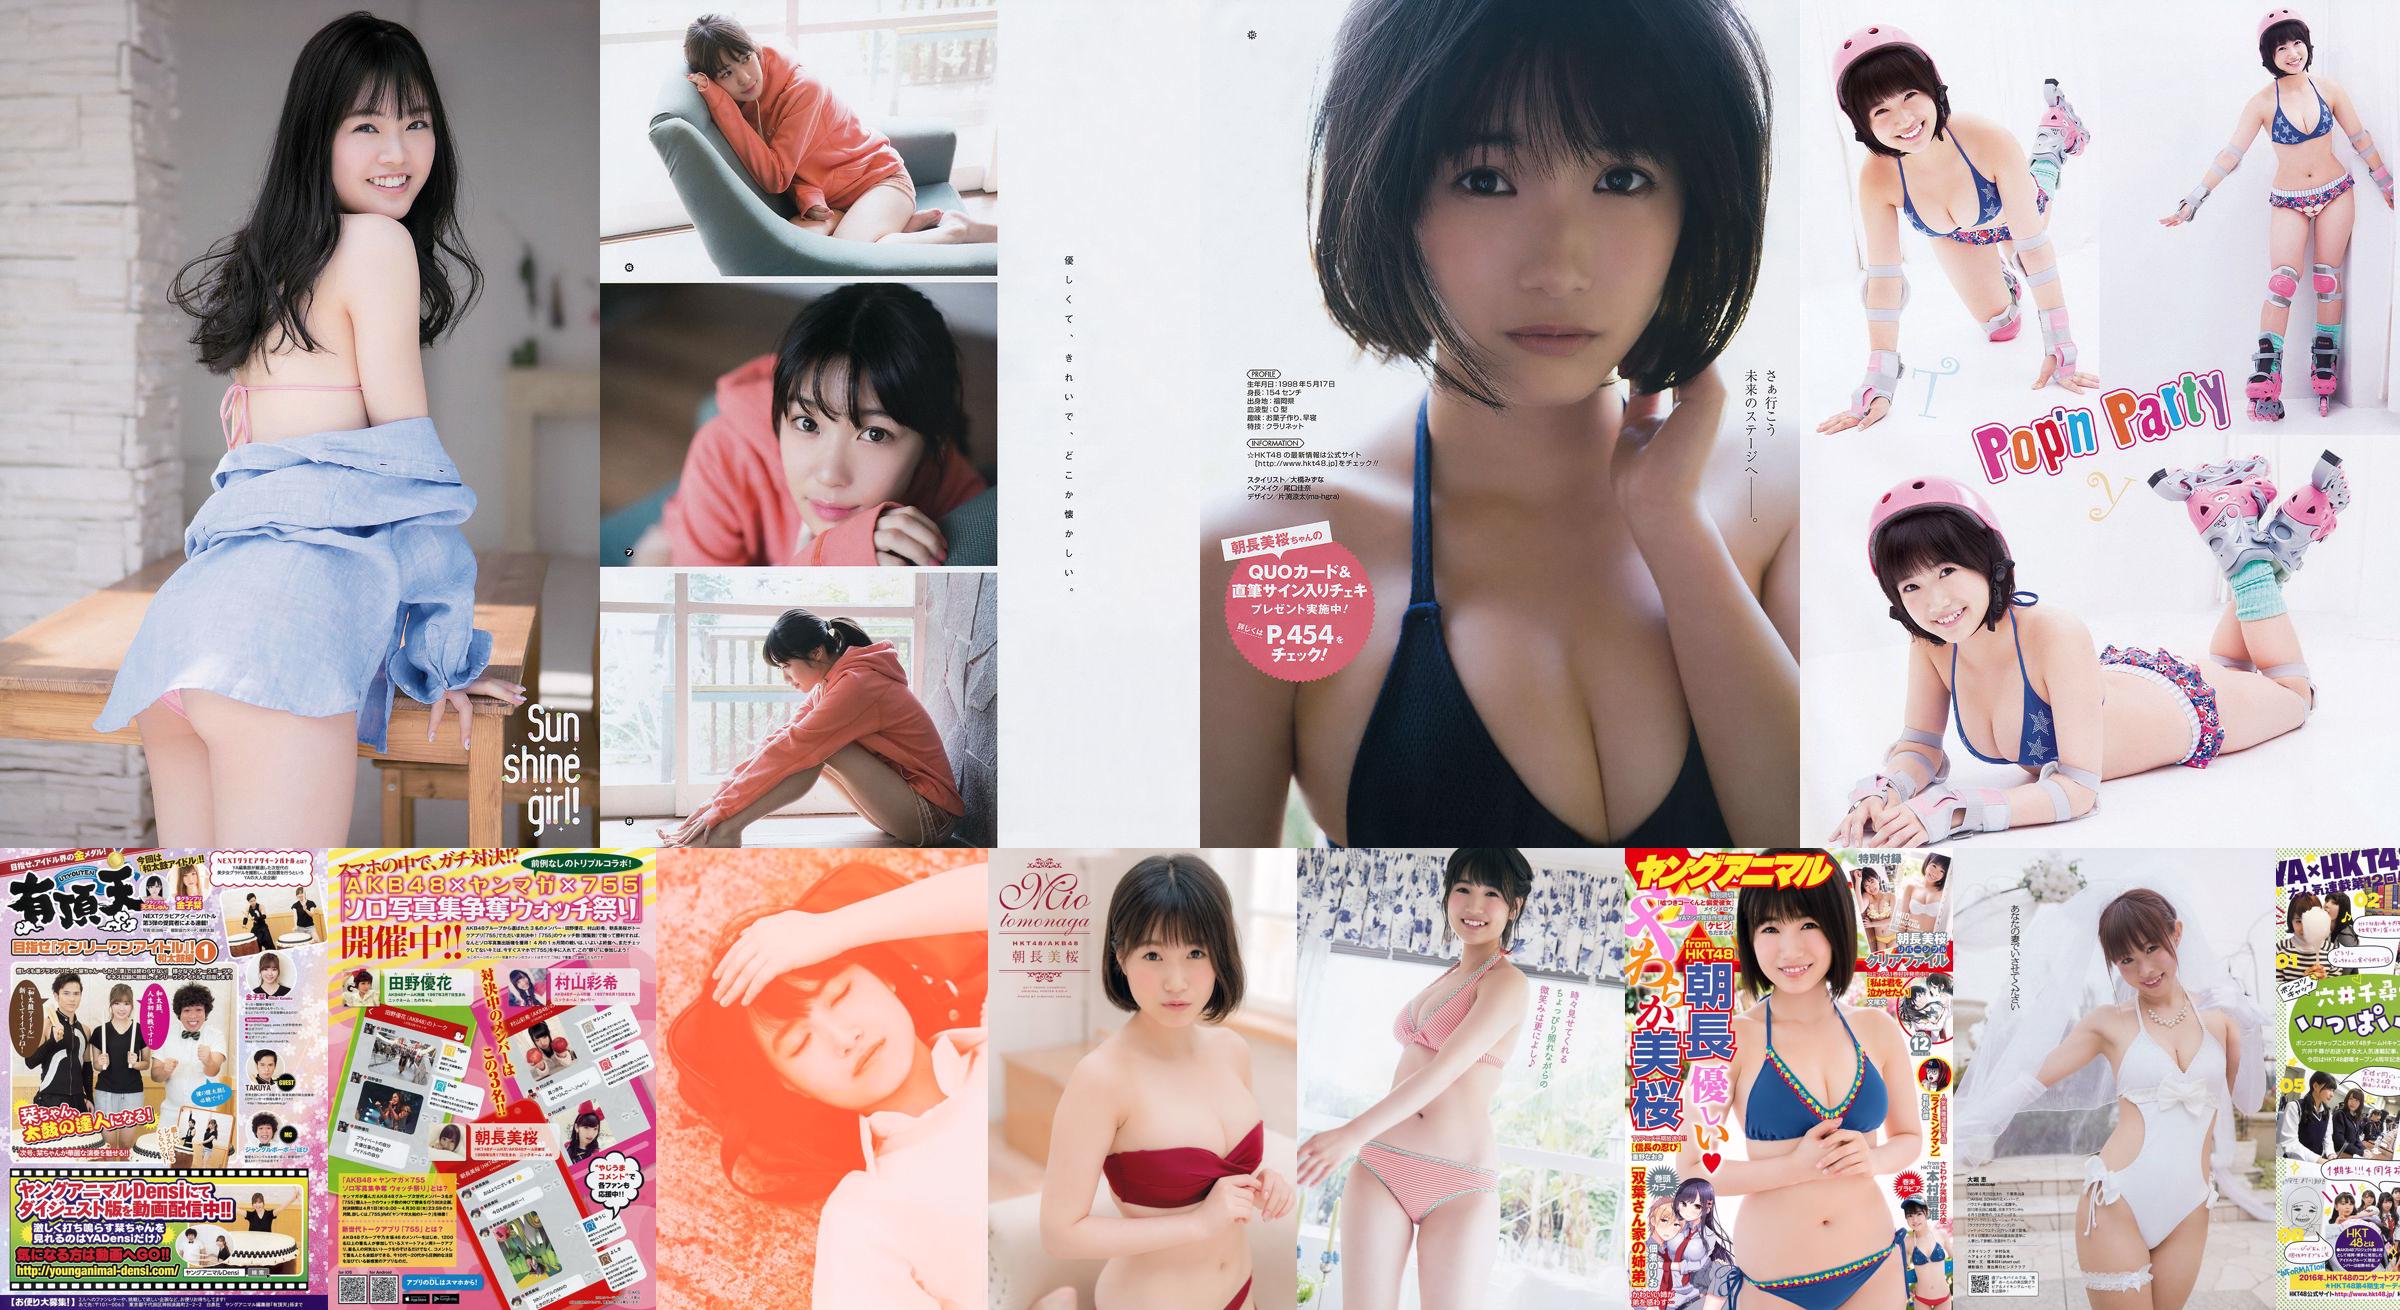 [Young Gangan] Asanagami Sakura Kamura Mami 2017 No.11 Photo Magazine No.79c9cb Page 1